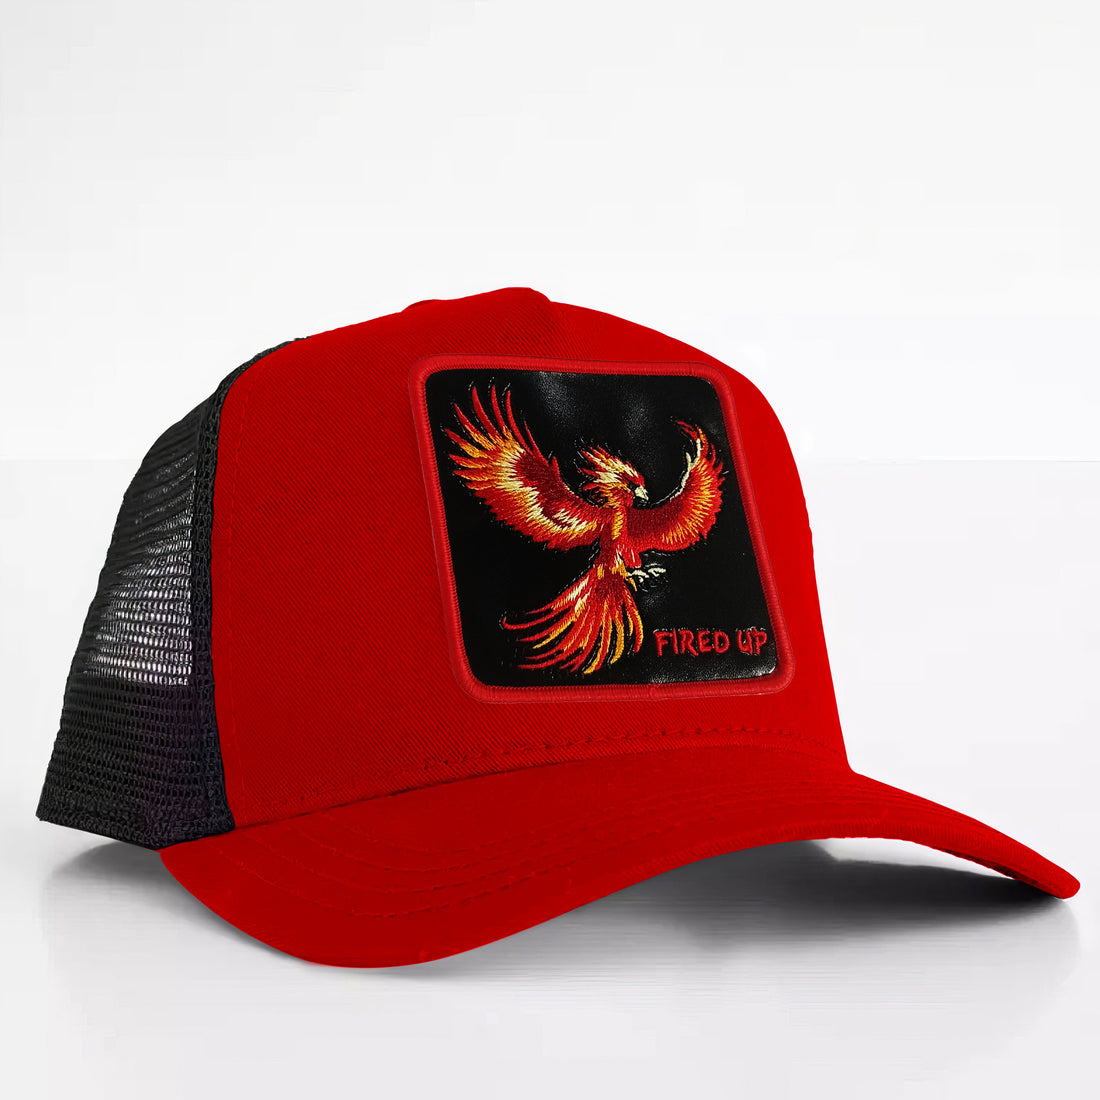 Phoenix - "Fired Up" Trucker Hat